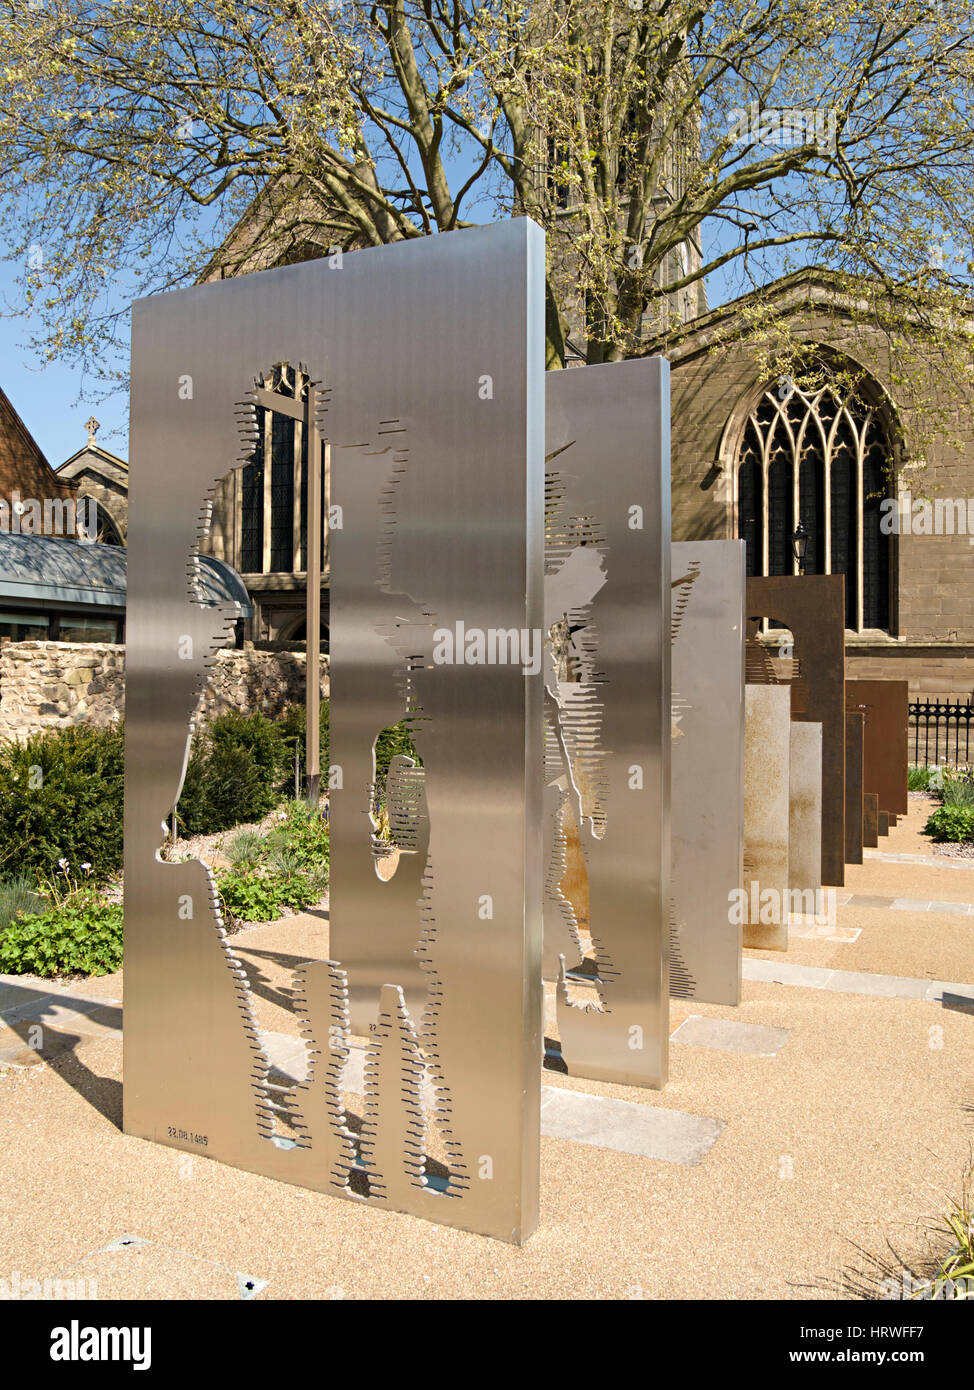 Vers l'immobilité - moderne le roi Richard iii sculpture en acier par dallas pierce quintero architectes, cathédrale de Leicester, Leicester, England, UK Banque D'Images